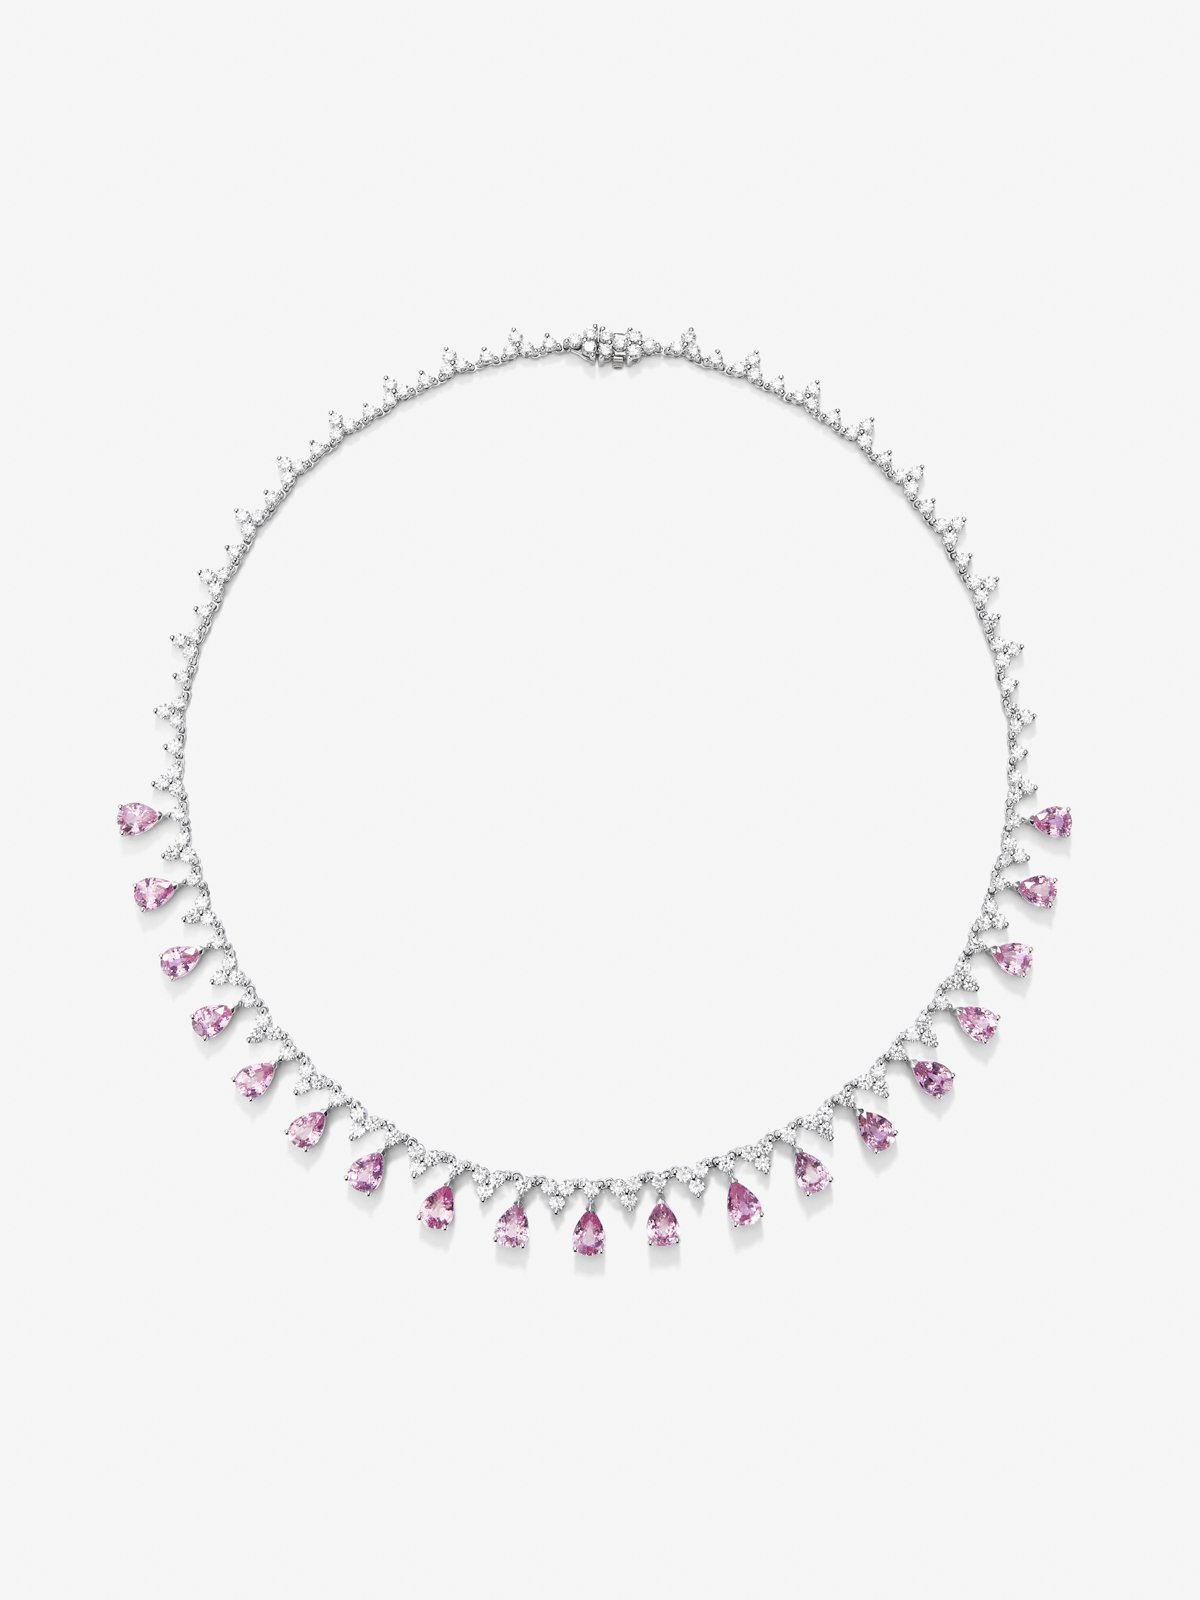 Collar rivière de oro blanco de 18K con zafiros rosas en talla pera de 16,03 cts y diamantes blancos en talla redonda de 8,85 cts